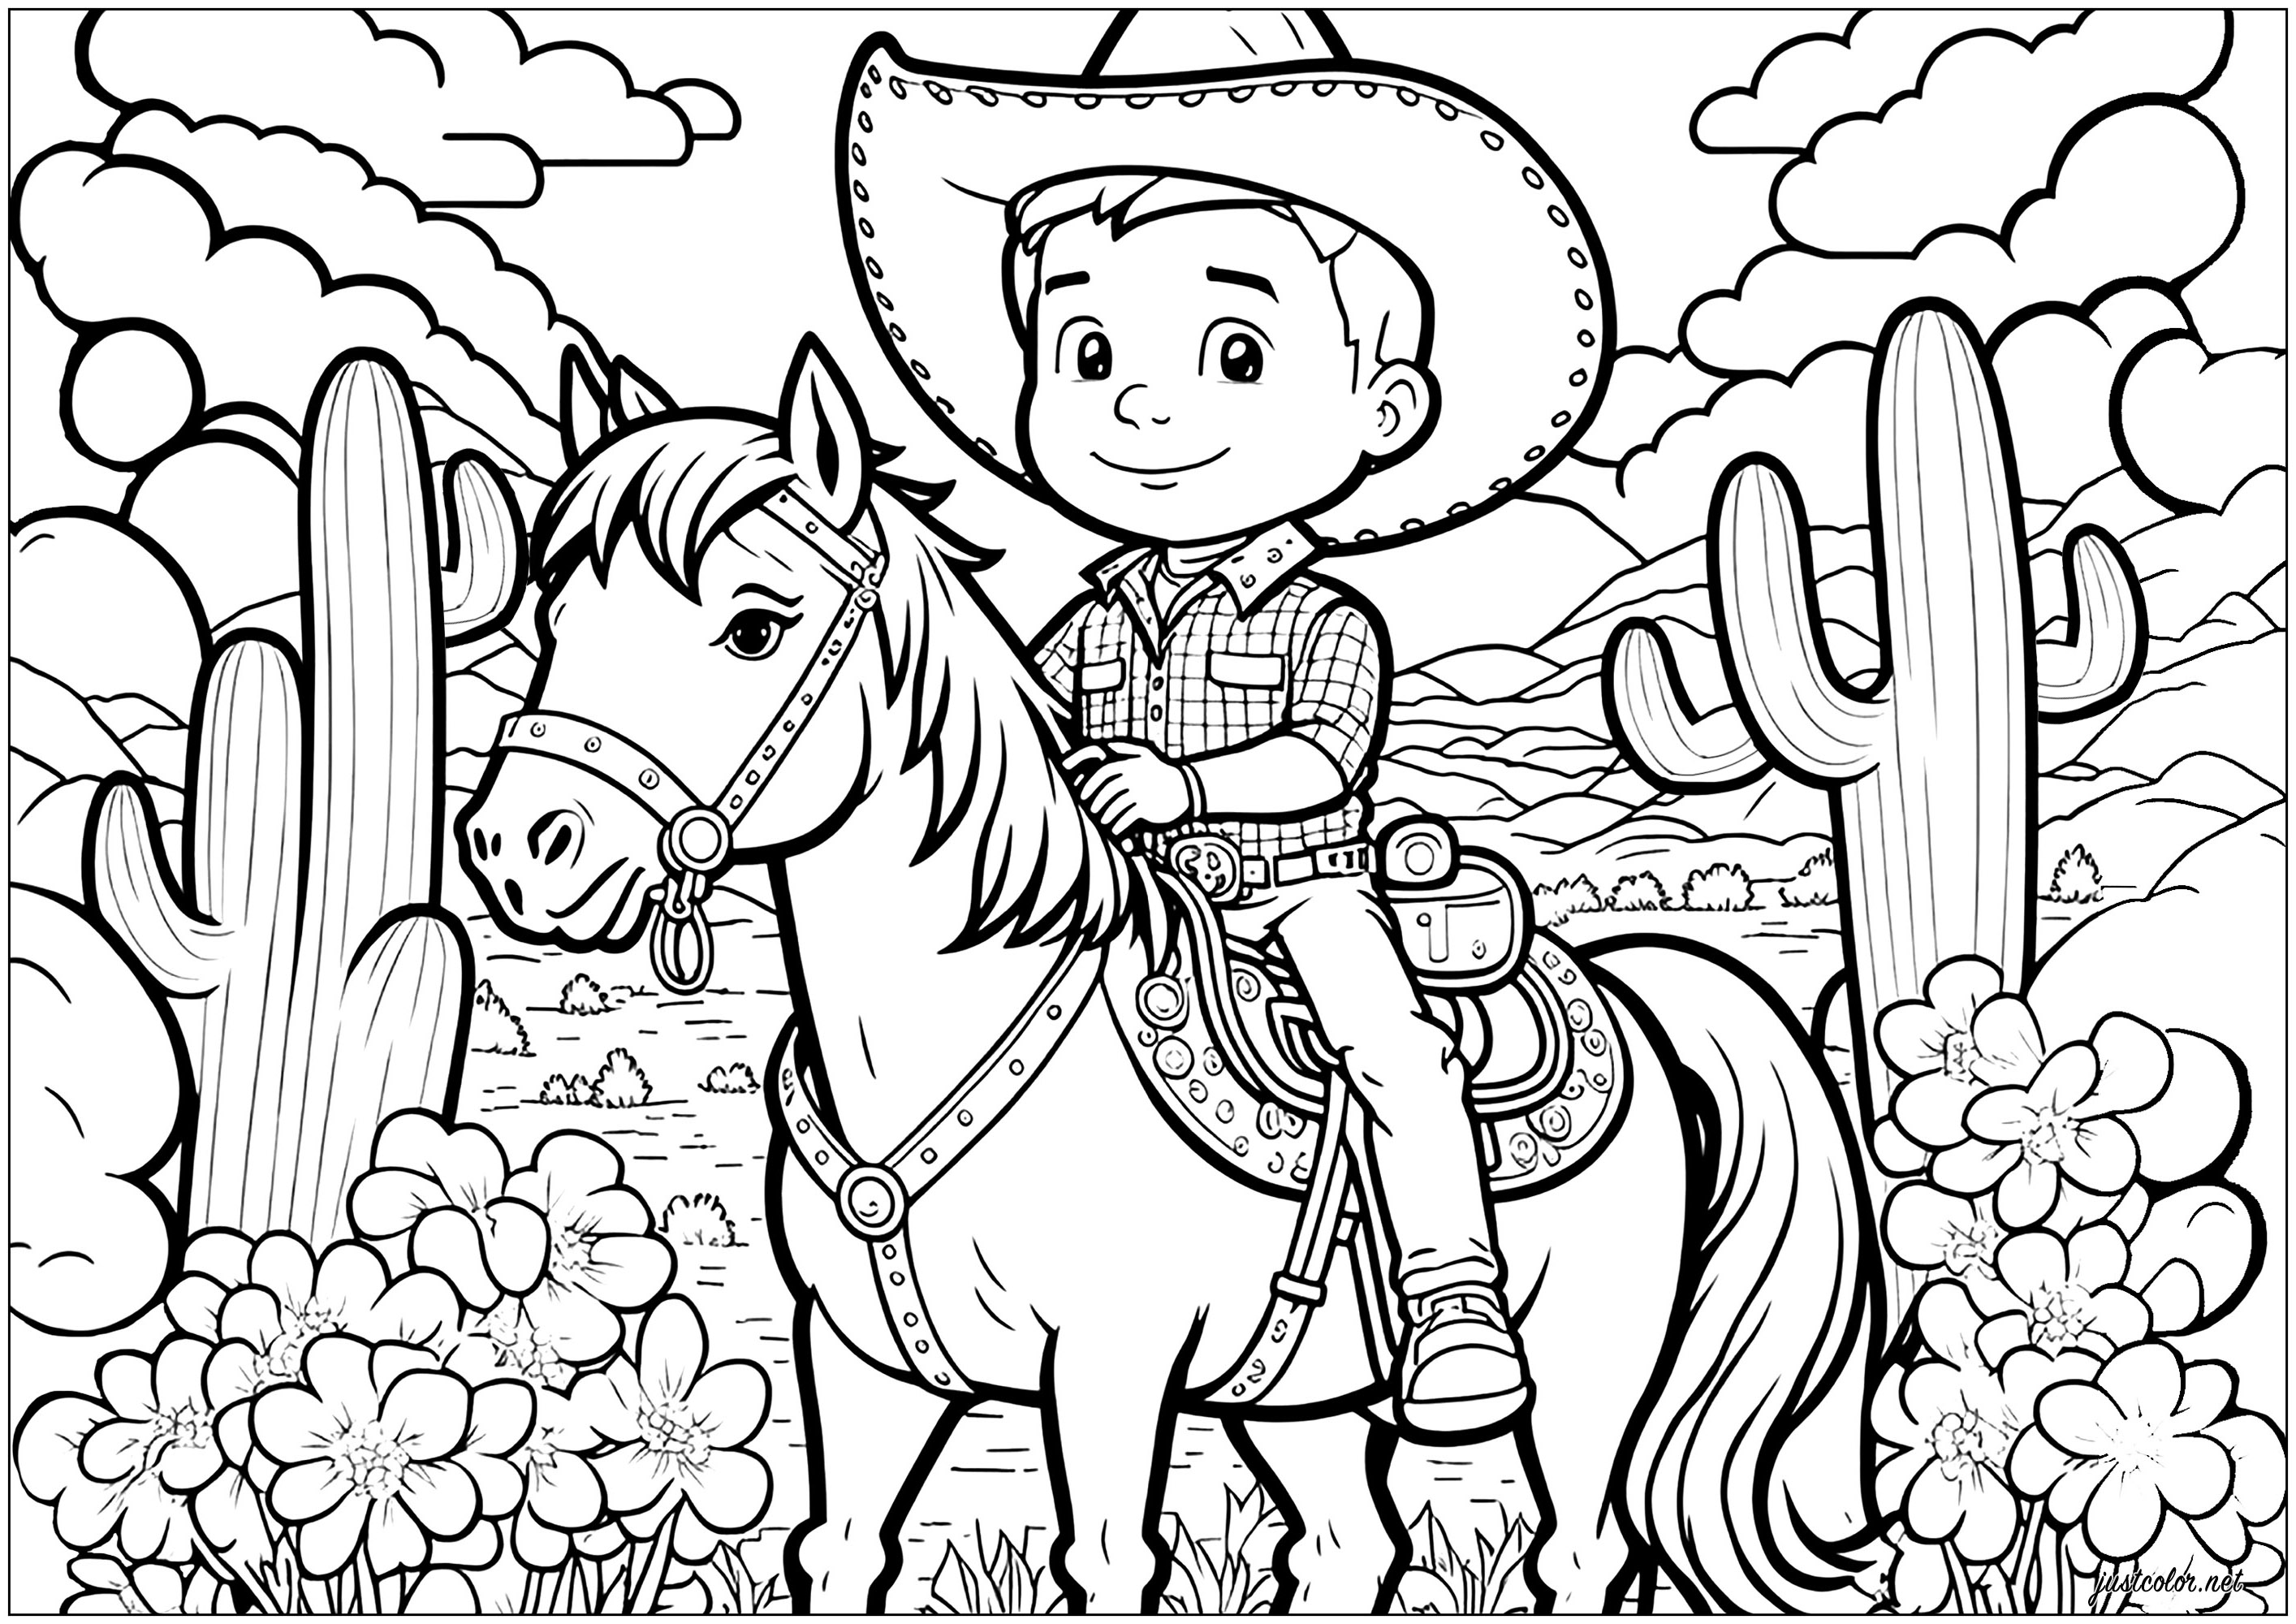 Coloriez ce Cow-boy sur son cheval, avec son arrière-plan inspiré des décors de western et de Far West !. Un coloriage au style Cartoon assumé, utilisez vos couleurs les plus vives et brillantes !